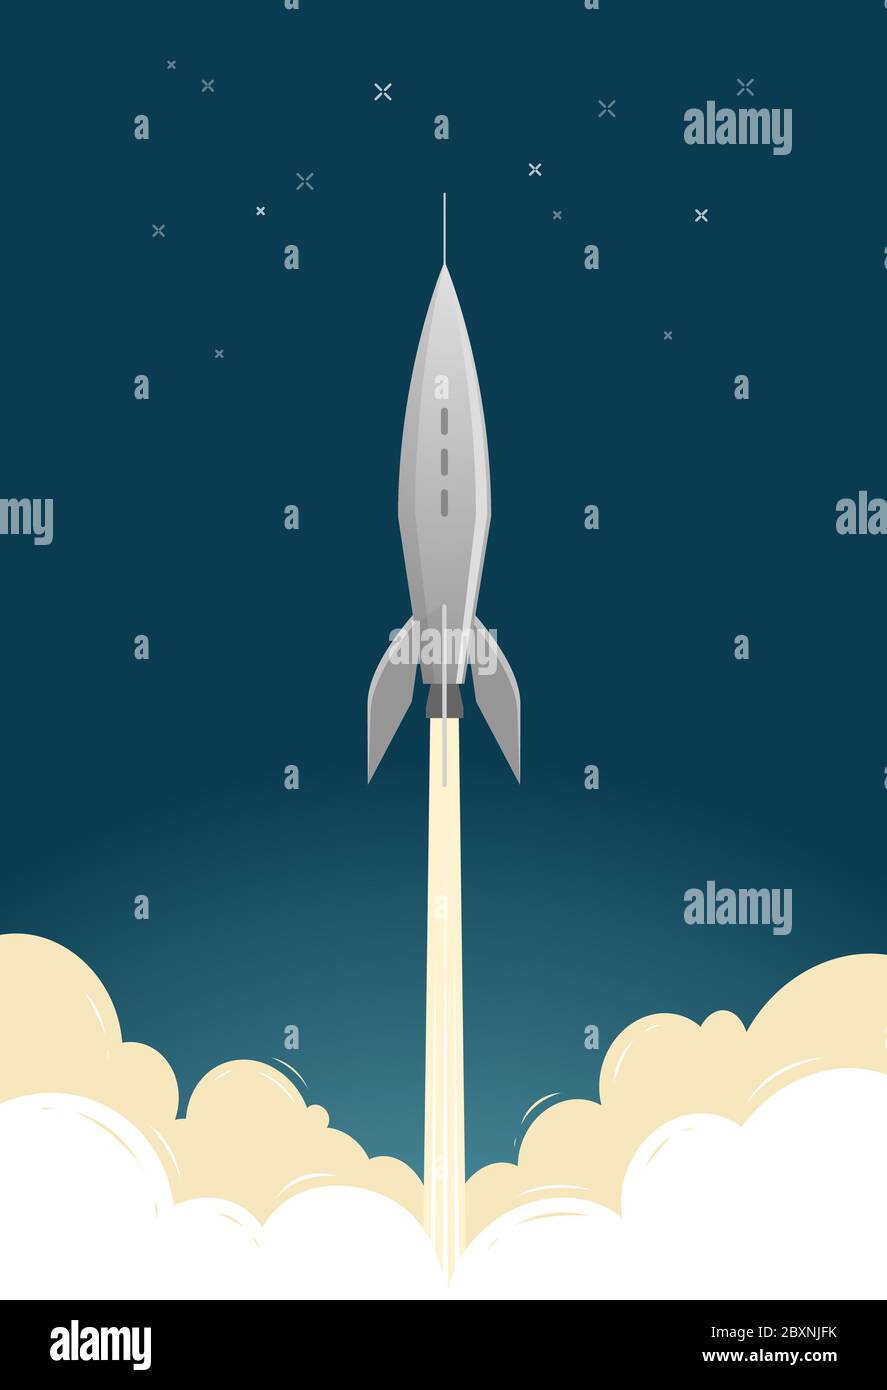 Lancement de fusée. Vol spatial, vaisseau spatial, illustration vectorielle de vaisseau spatial Illustration de Vecteur